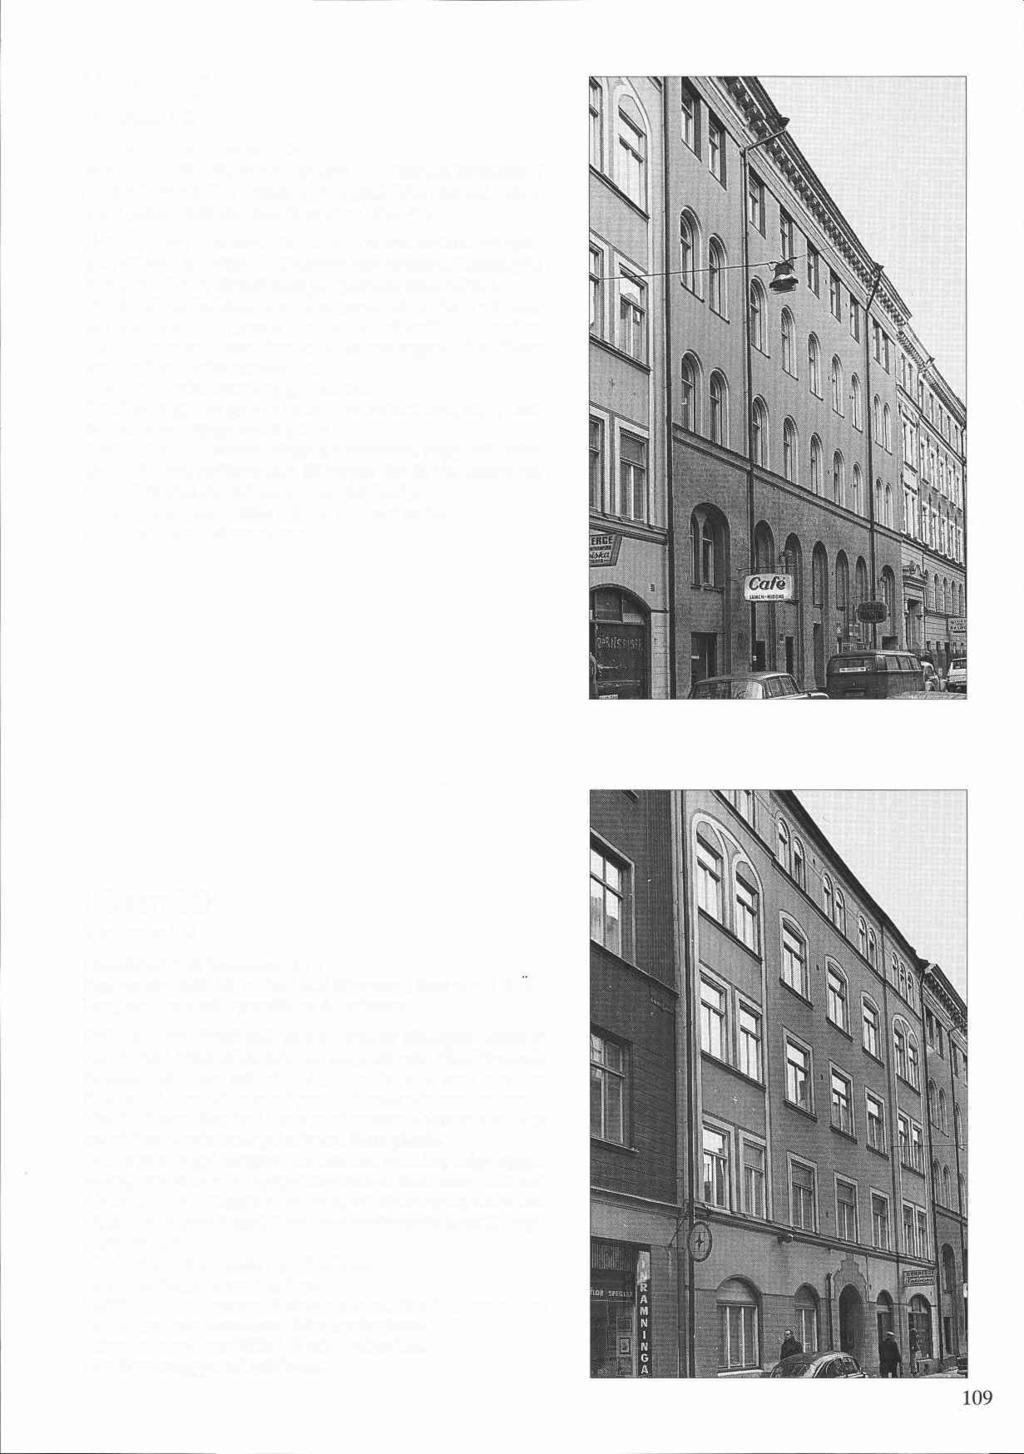 Höken 16 Bondegatan 1 C Byggnadsår 1885-88, arkitekt troligen A E Melander, byggherre N J Nystedt senare H E Thorén. Ombyggnad, WC, hiss och garage under gården 1923-24. Fasadförenkling 1942-44.